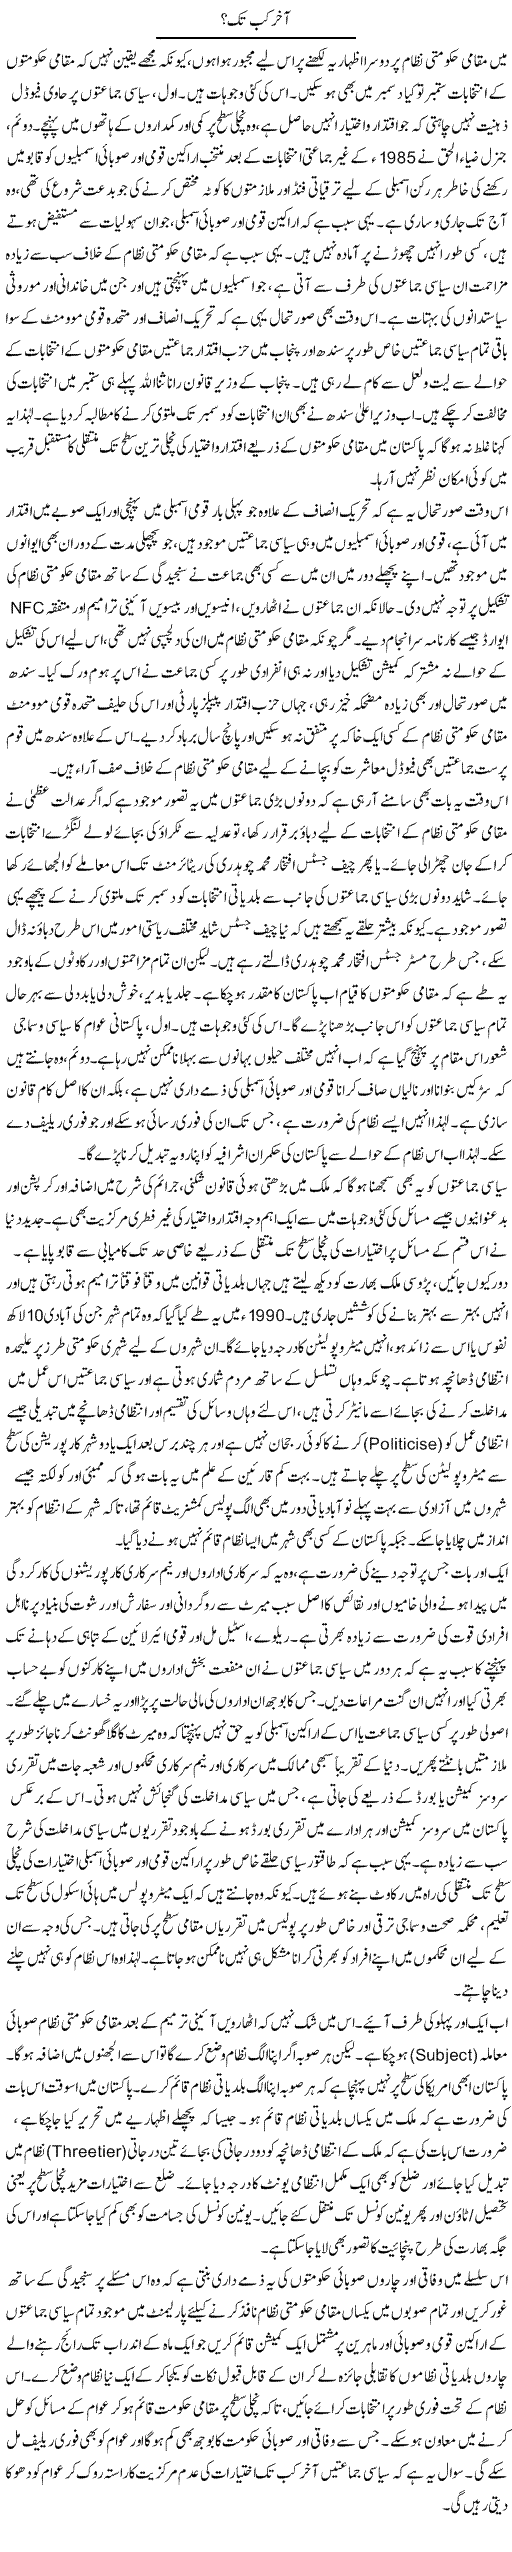 Akhir Kab Tak | Muqtada Mansoor | Daily Urdu Columns